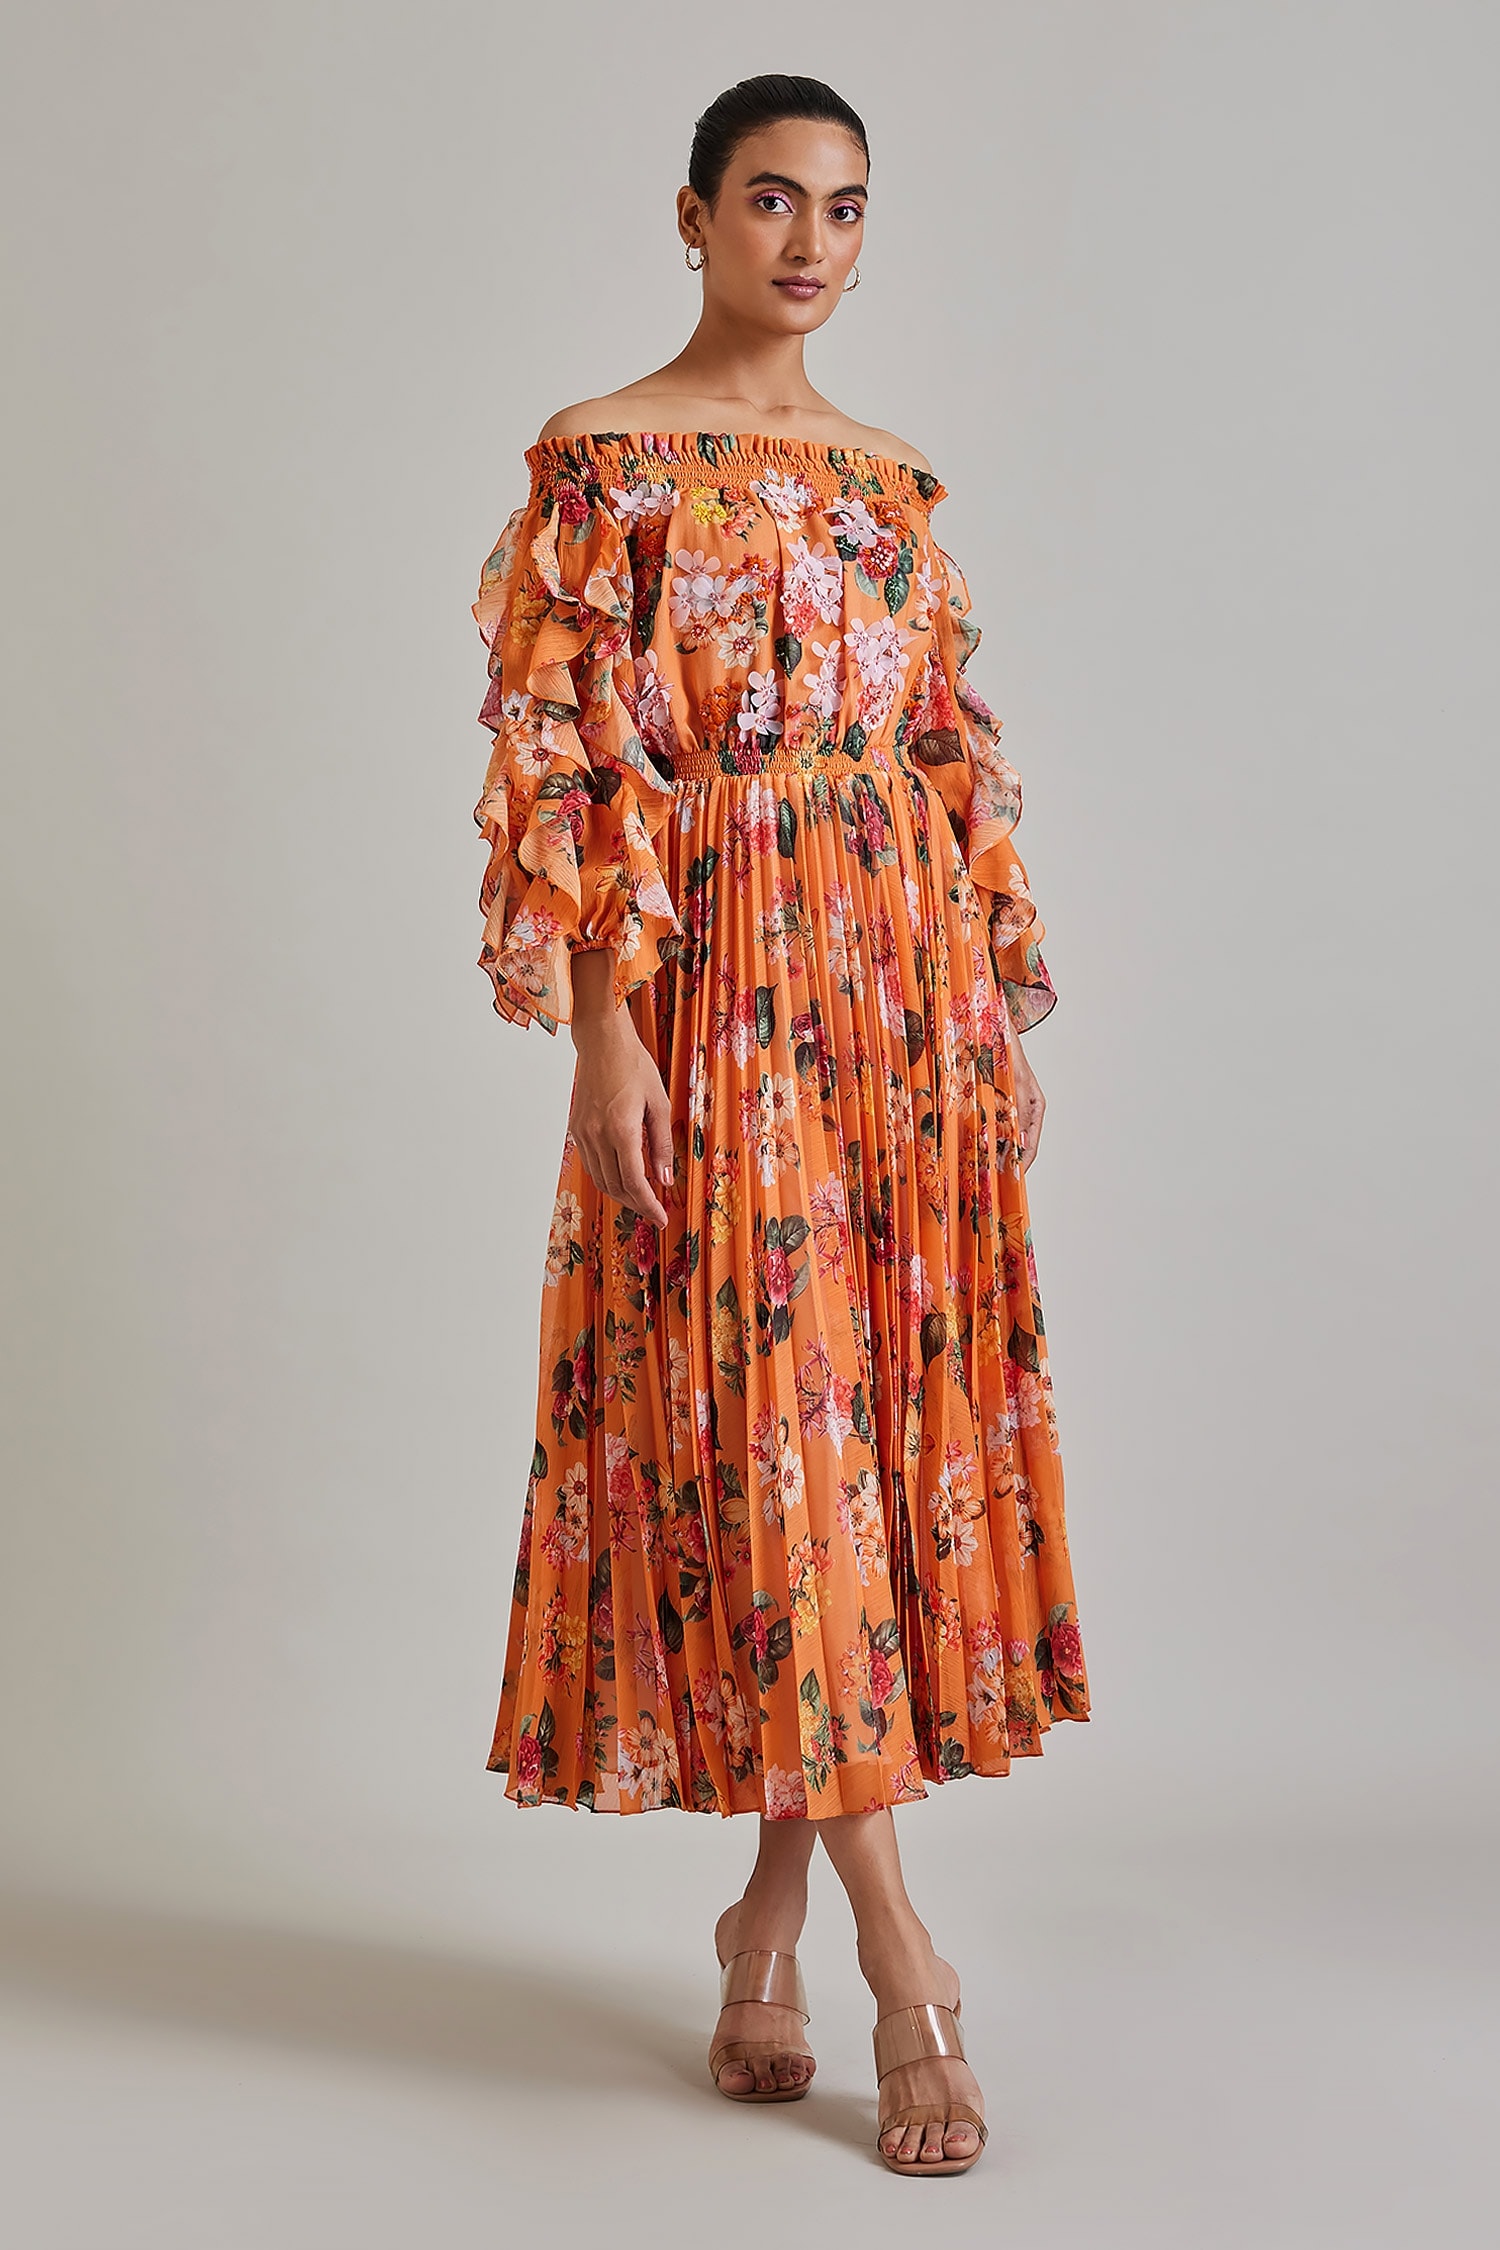 Buy Orange Bandeau Ruffle Dress For Women by Shriya Som Online at Aza  Fashions.